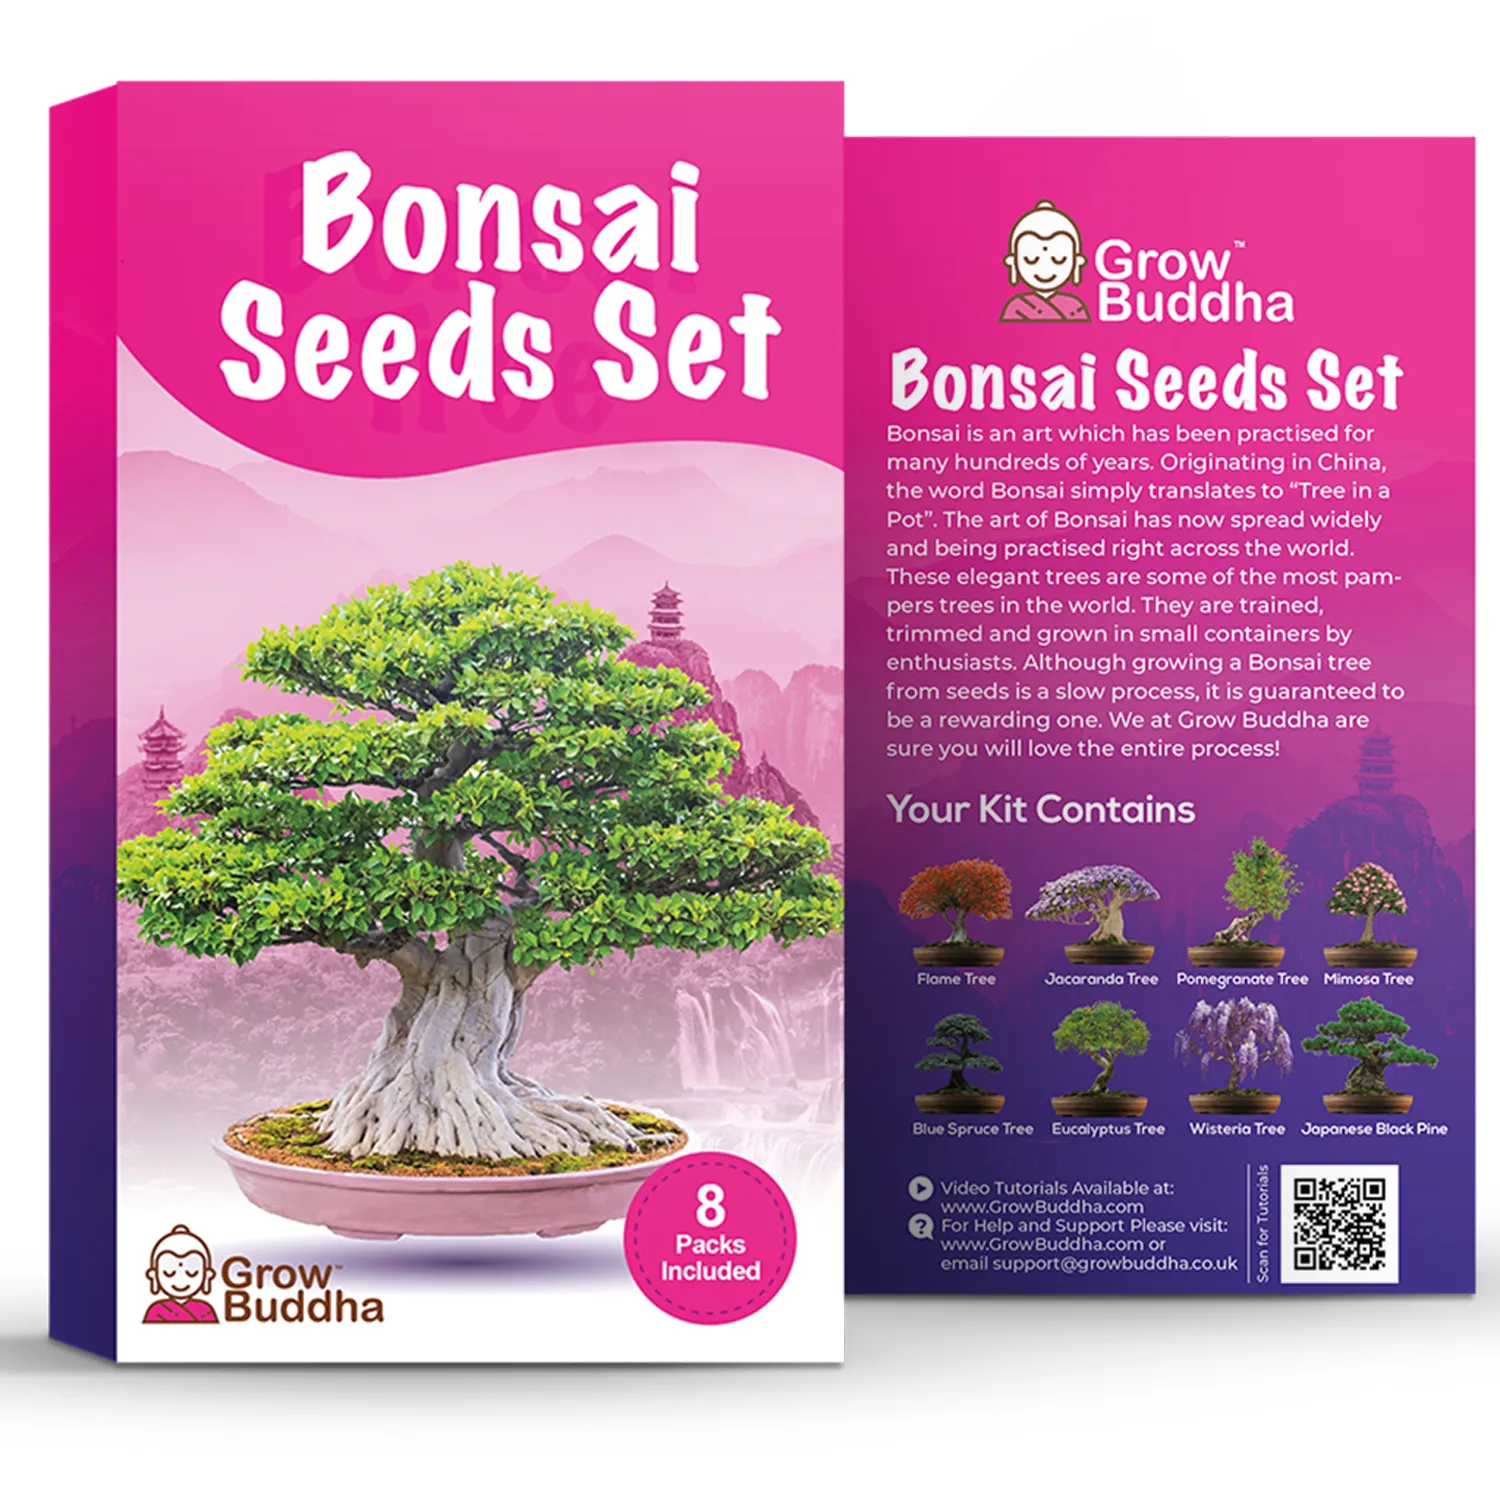 Bonsai Samen-Set, Kit aus 8 verschiedenen Bonsa-Bäumen